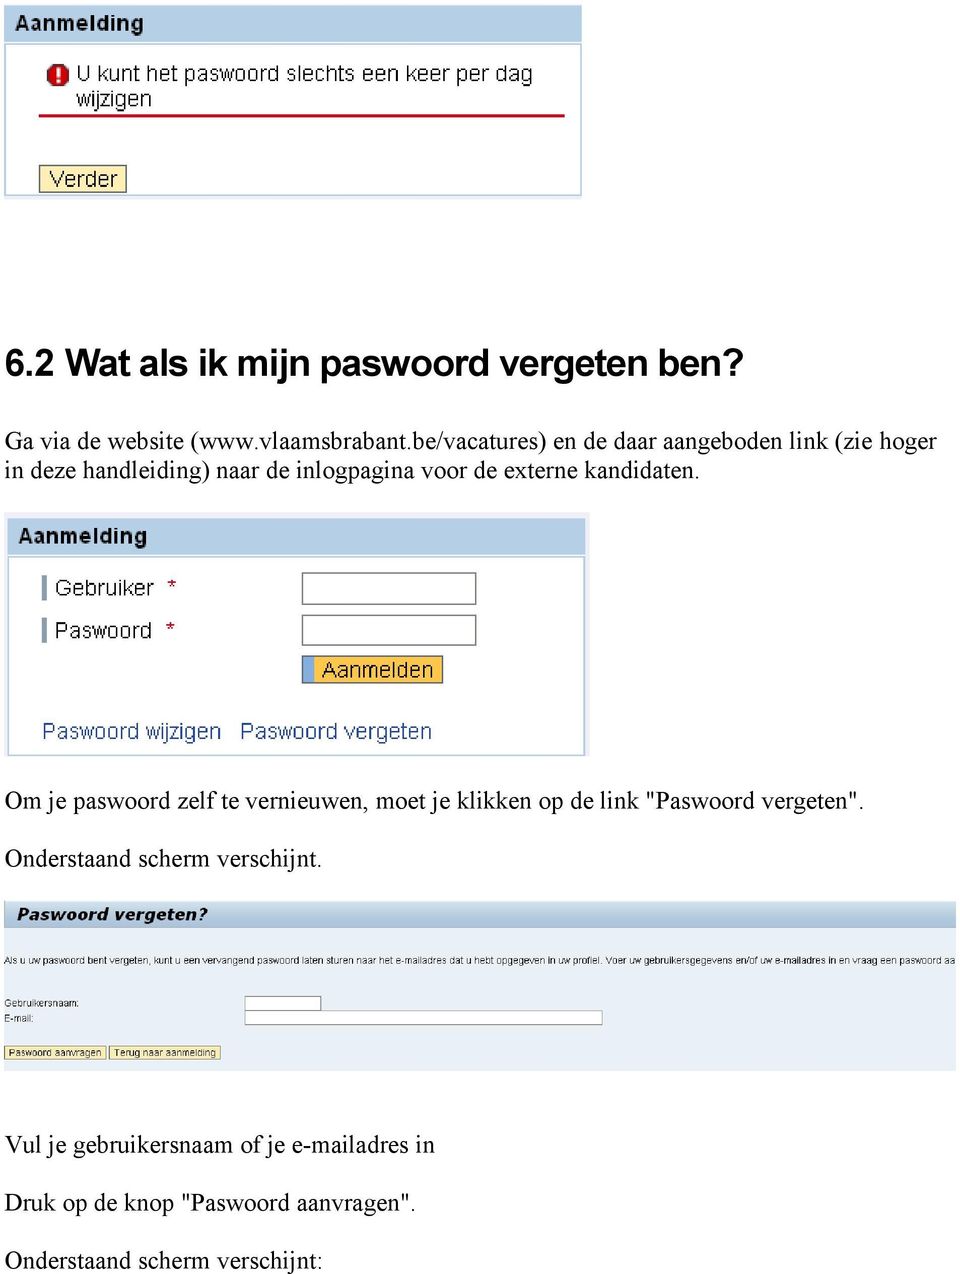 externe kandidaten. Om je paswoord zelf te vernieuwen, moet je klikken op de link "Paswoord vergeten".